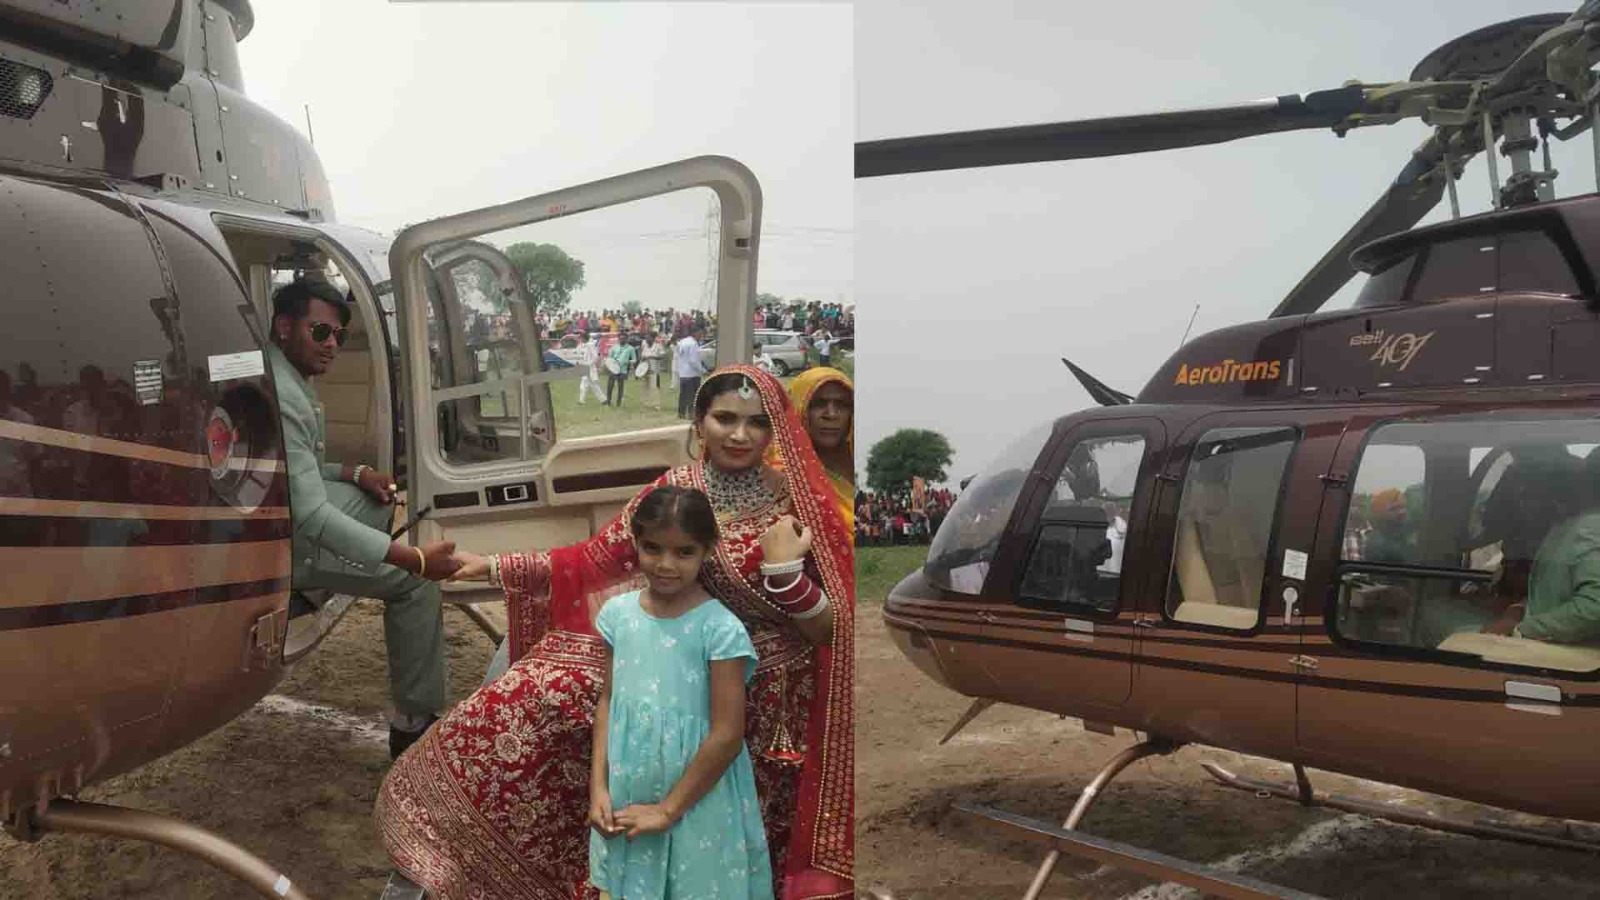 Aligarh: गांव वालों के ताने से परेशान दूल्हा हेलीकॉप्टर लेकर दुल्हन के घर पहुंचा, विदाई के बाद गांव के ऊपर हेलीकॉप्टर से लगाए तीन चक्कर